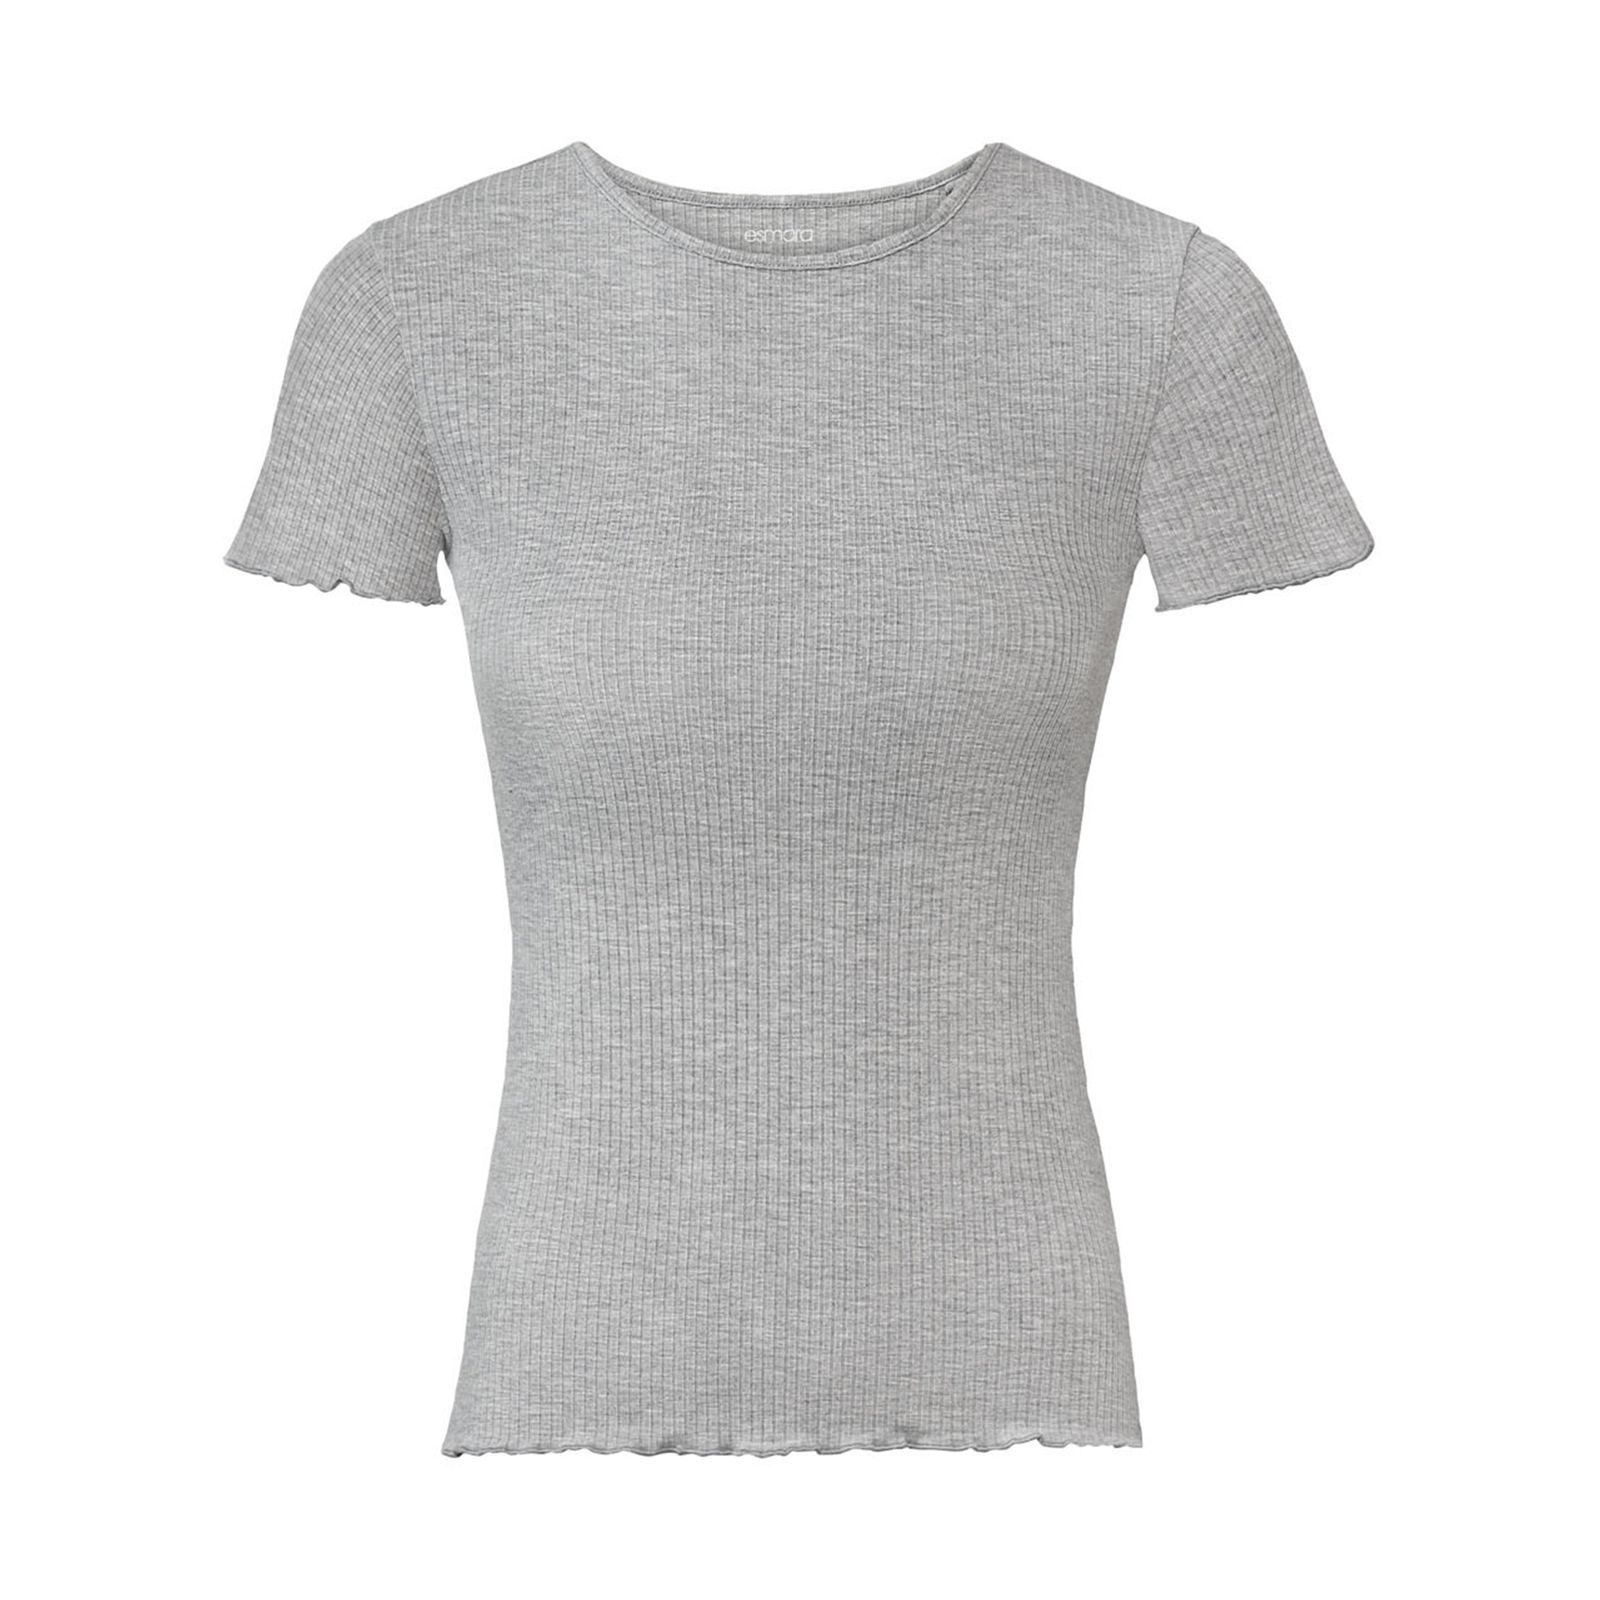 تی شرت آستین کوتاه زنانه اسمارا مدل کبریتی رنگ طوسی -  - 1